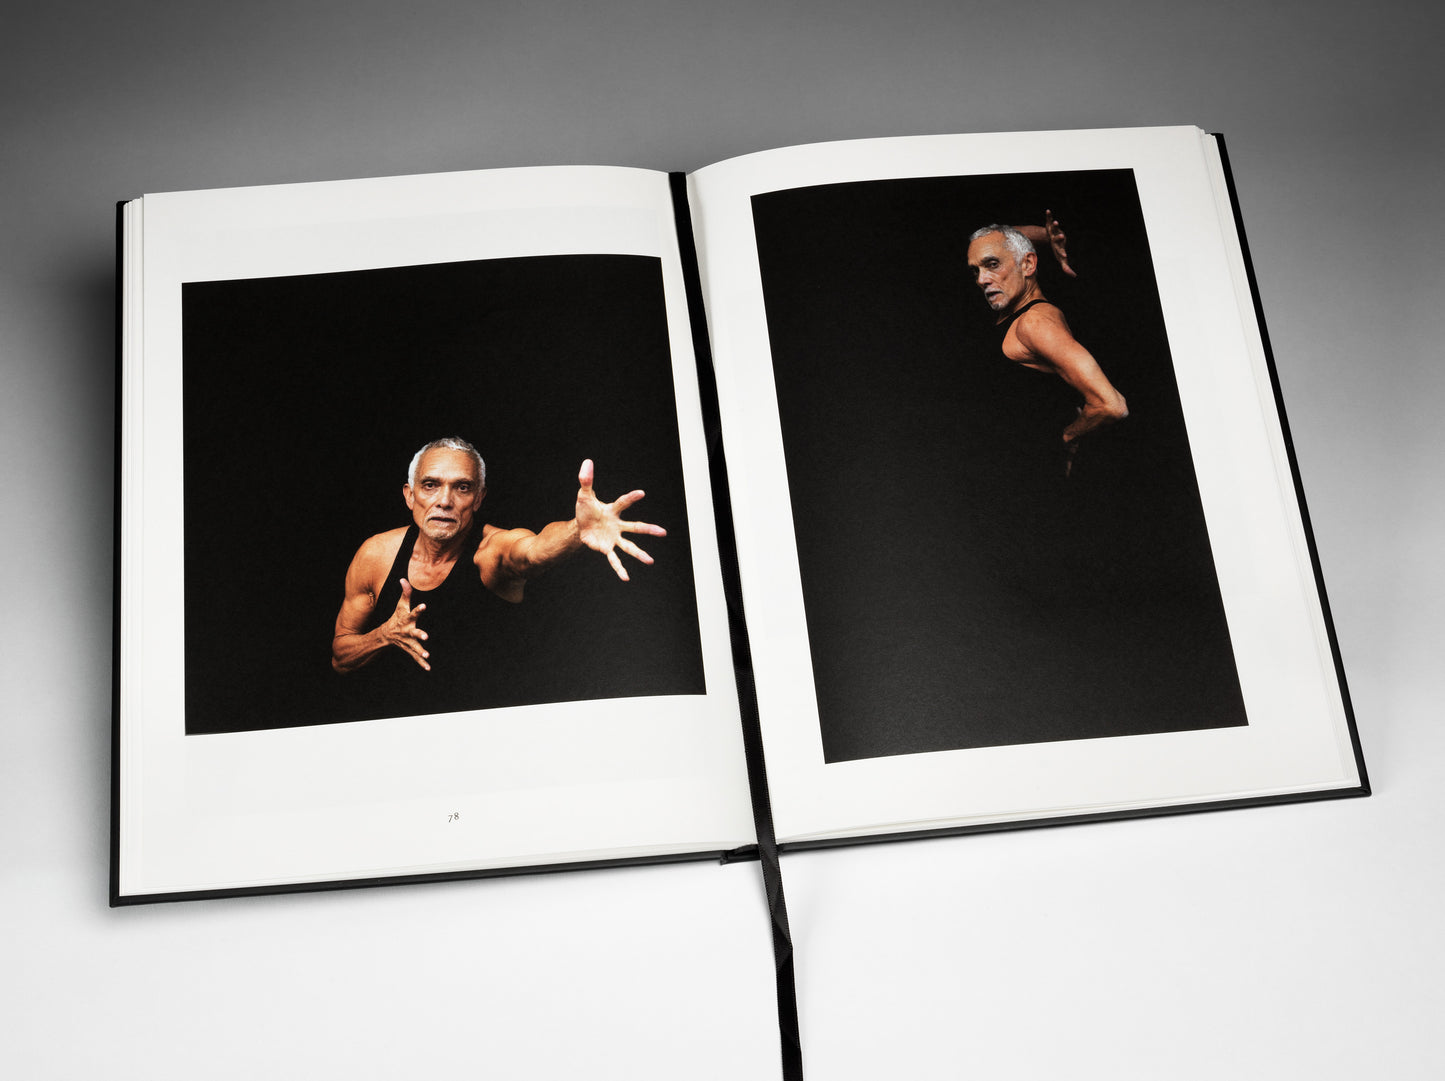 
                  
                    Ageless Dancers : Betti Franceschi
                  
                